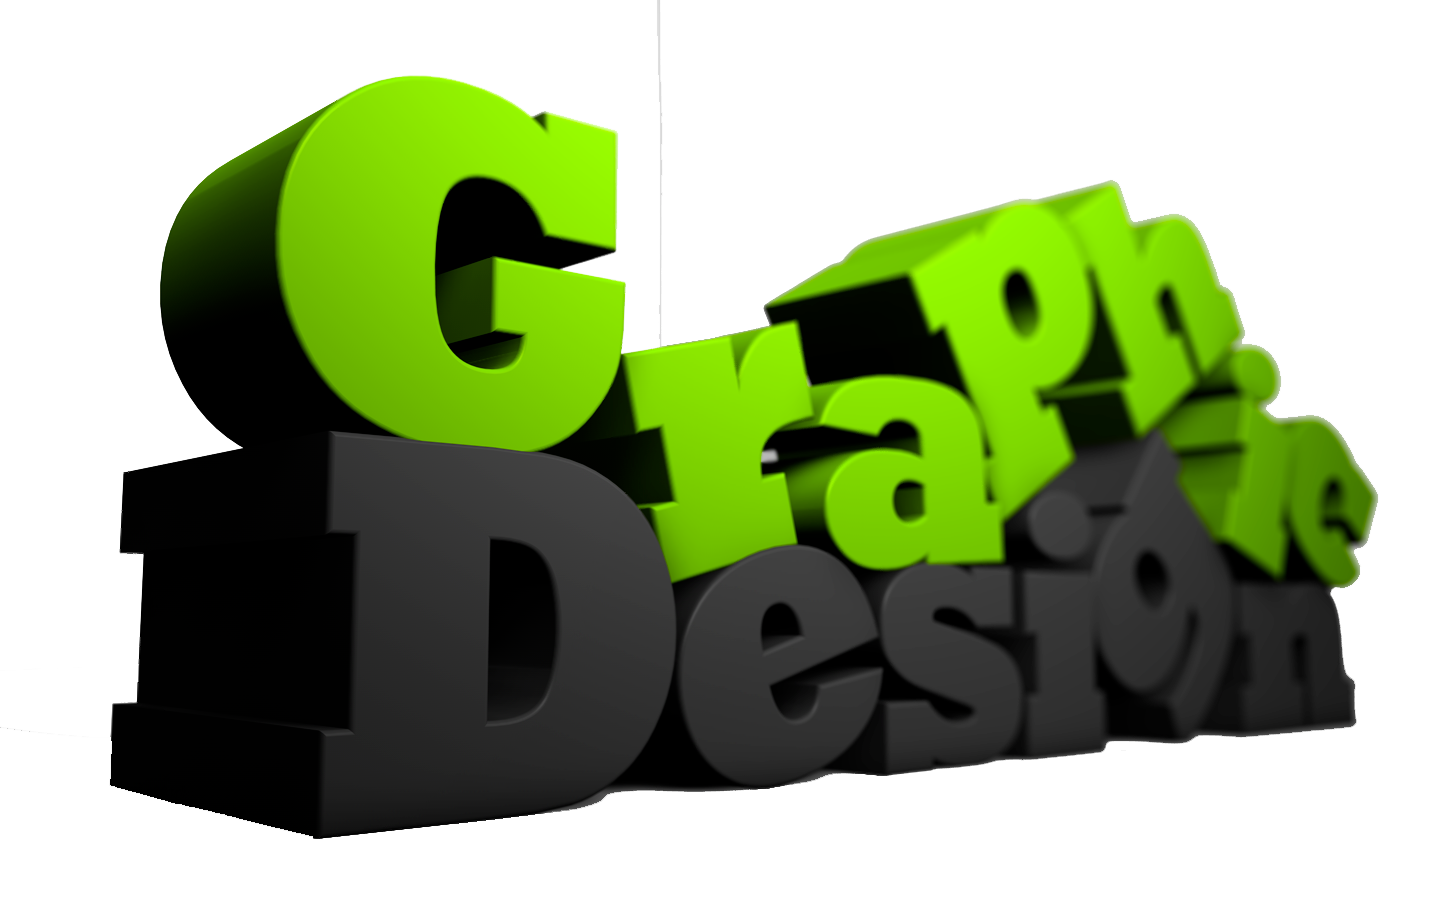 Text graphics. Компьютерная Графика логотип. 3д надпись. 3d-графики логотипа. Графический дизайн.